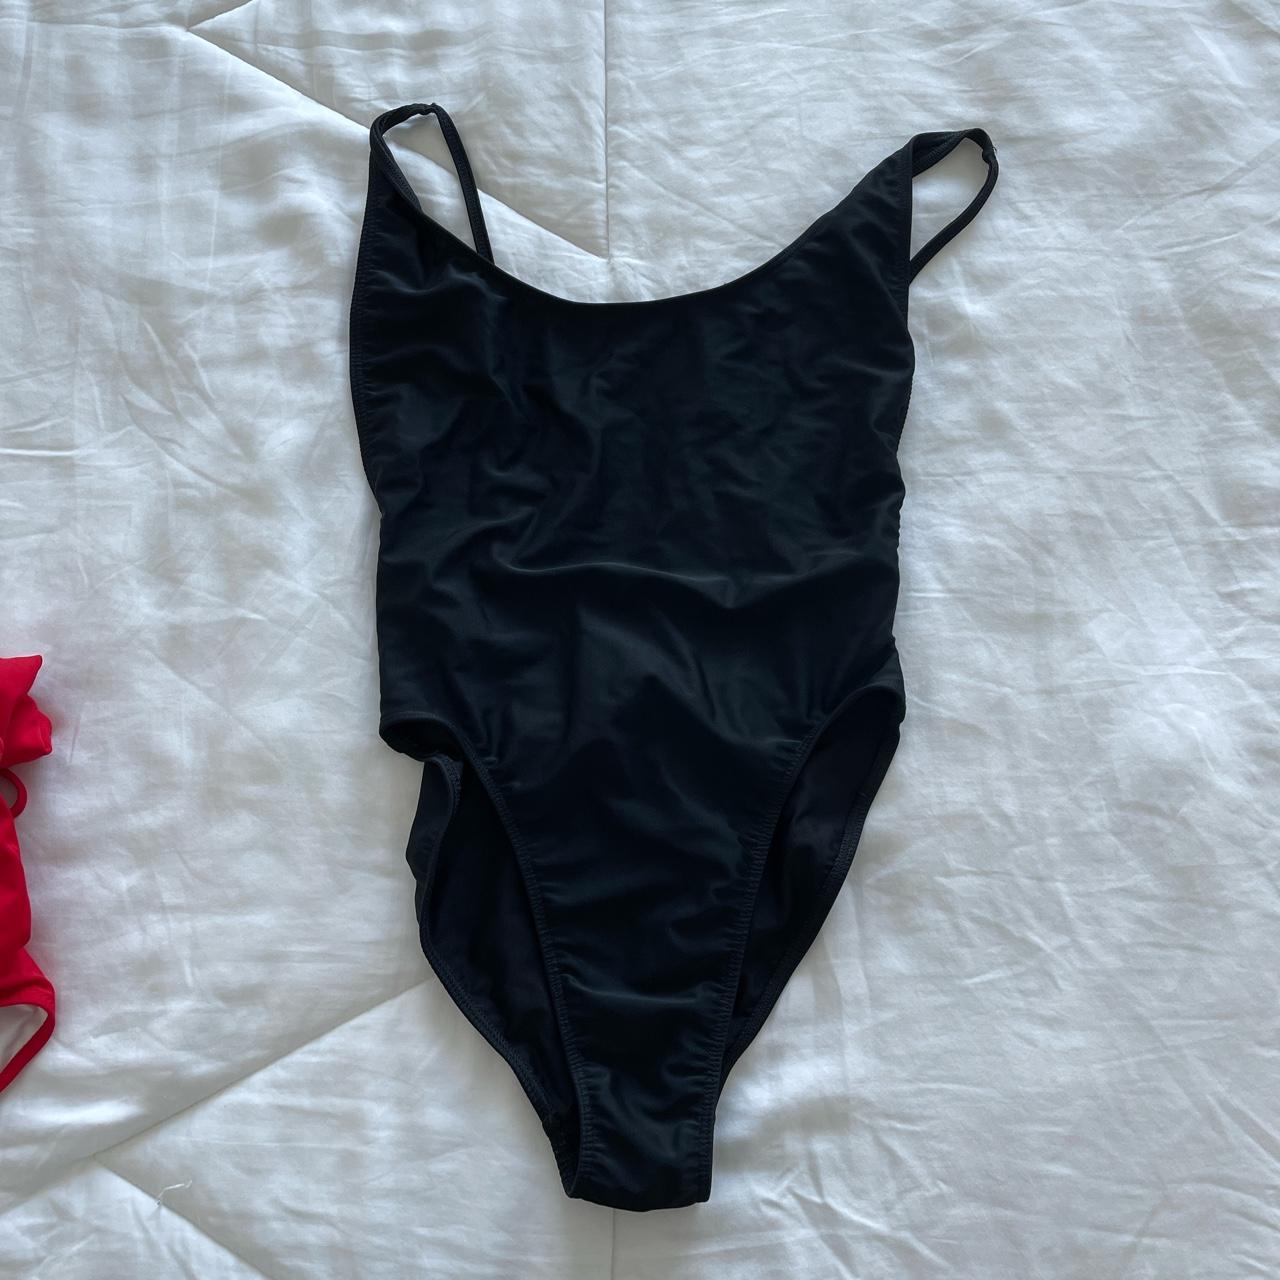 American Apparel Women's Swimsuit-one-piece | Depop